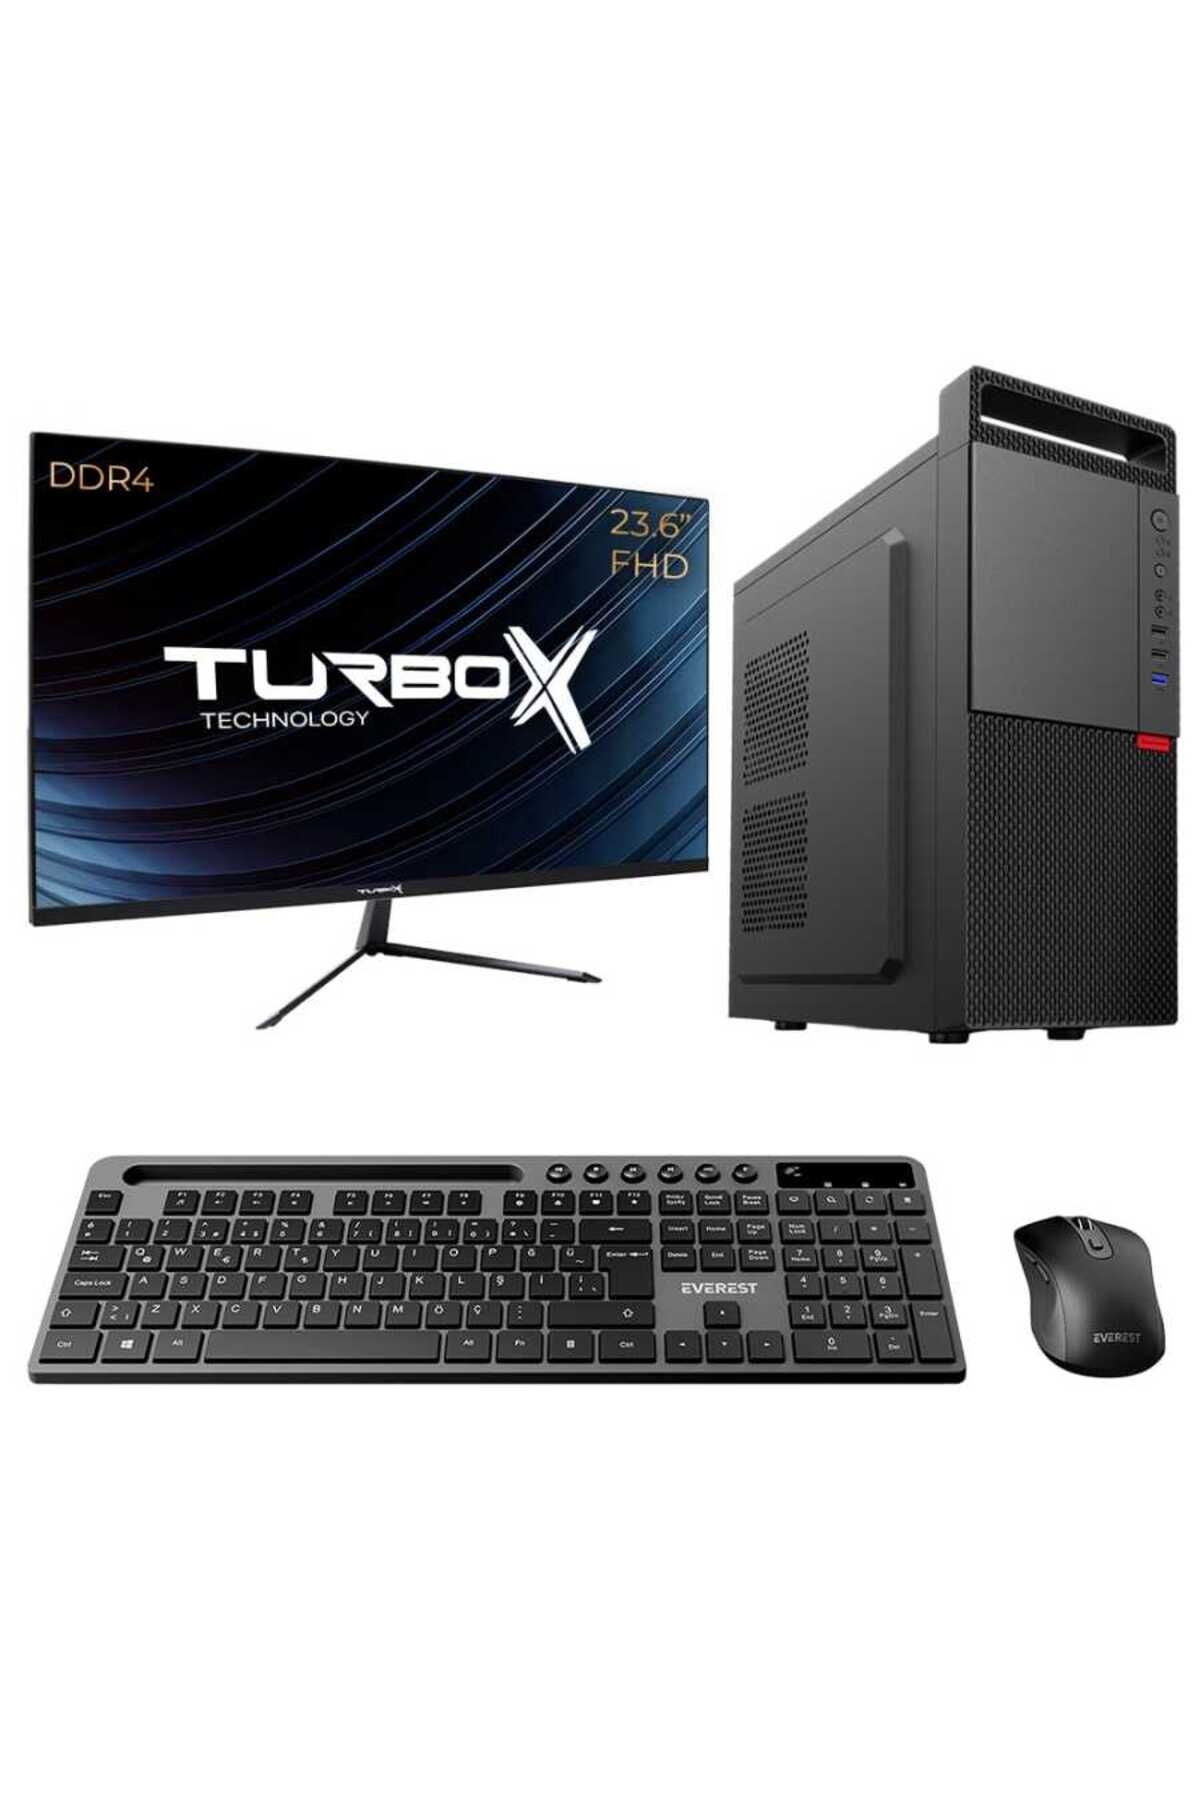 TURBOX Tx5188 i7 11700 32GB DDR4 512GB SSD 23.6 inç FHD Monitör Masaüstü Kurumsal Ofis Bilgisayarı